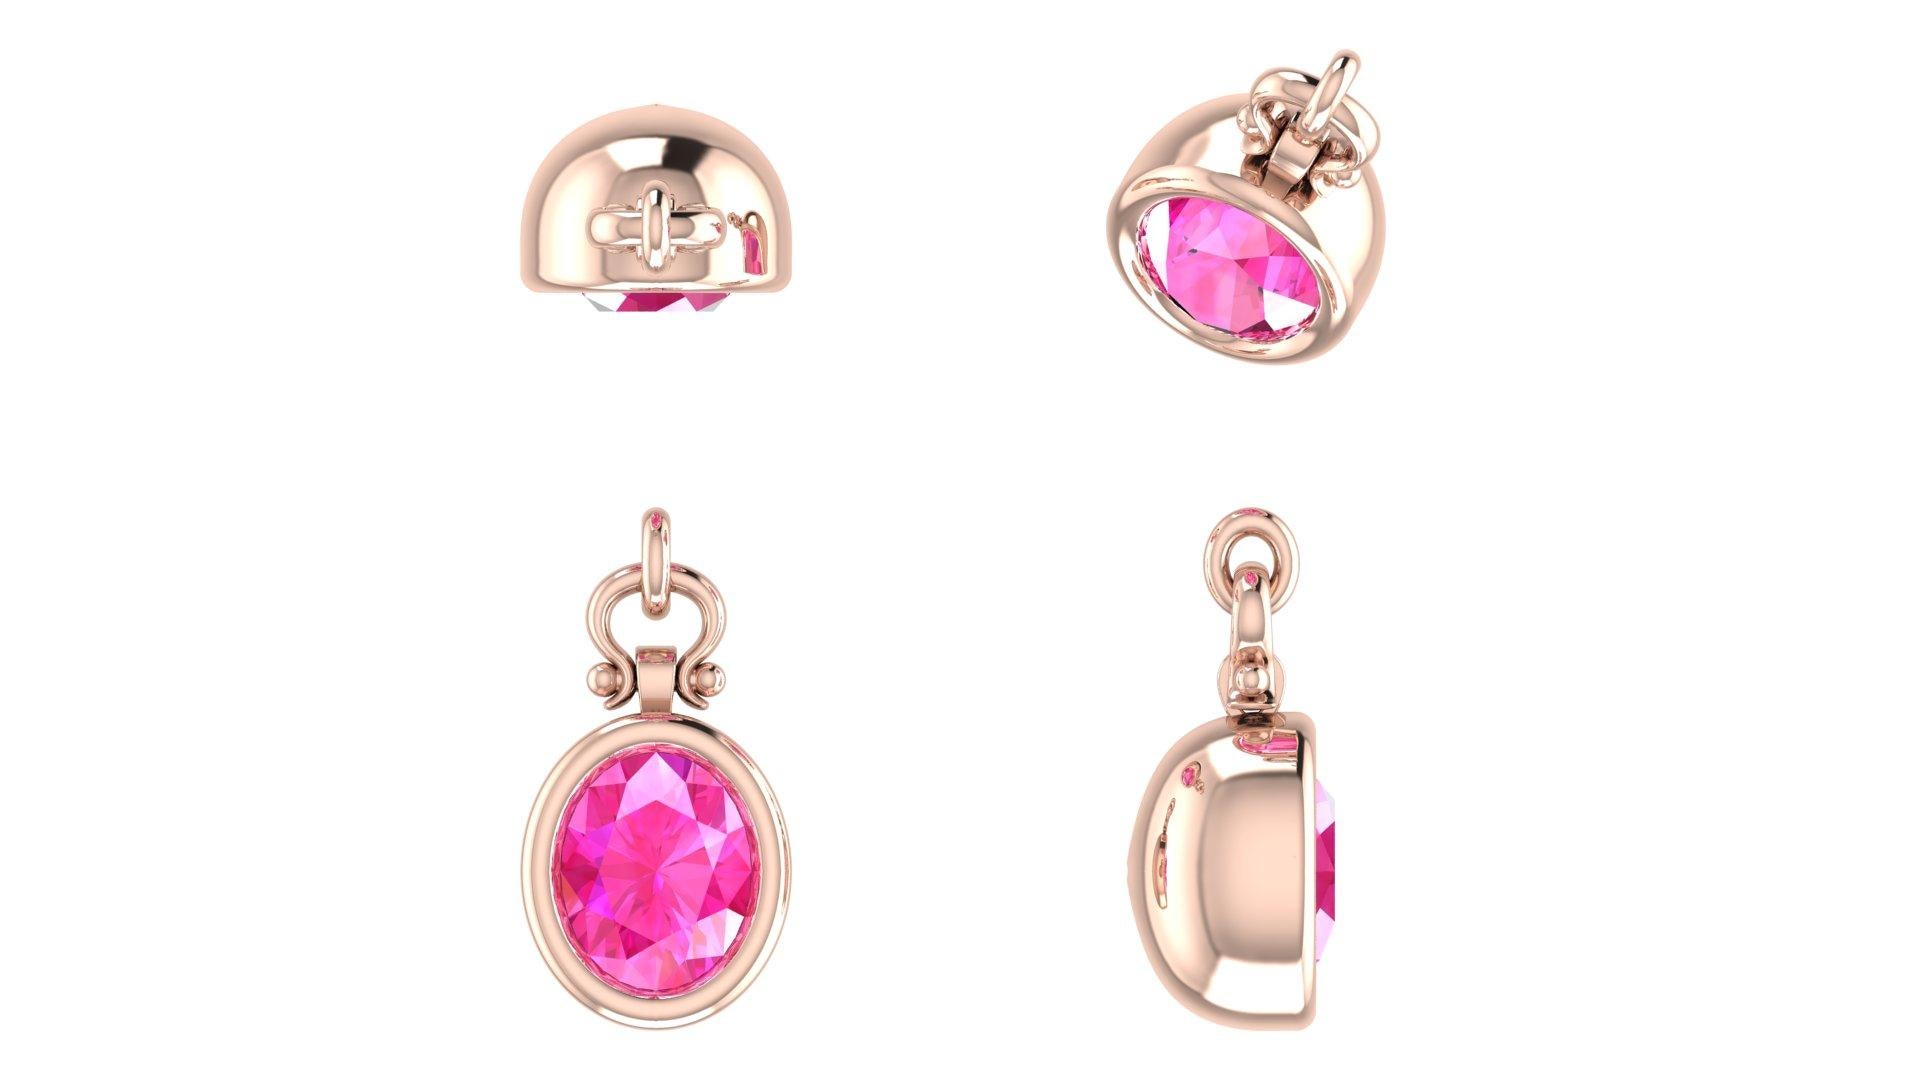 Berberyn Certified 3.13 Carat Oval Cut Pink Sapphire Pendant in 18k For Sale 2